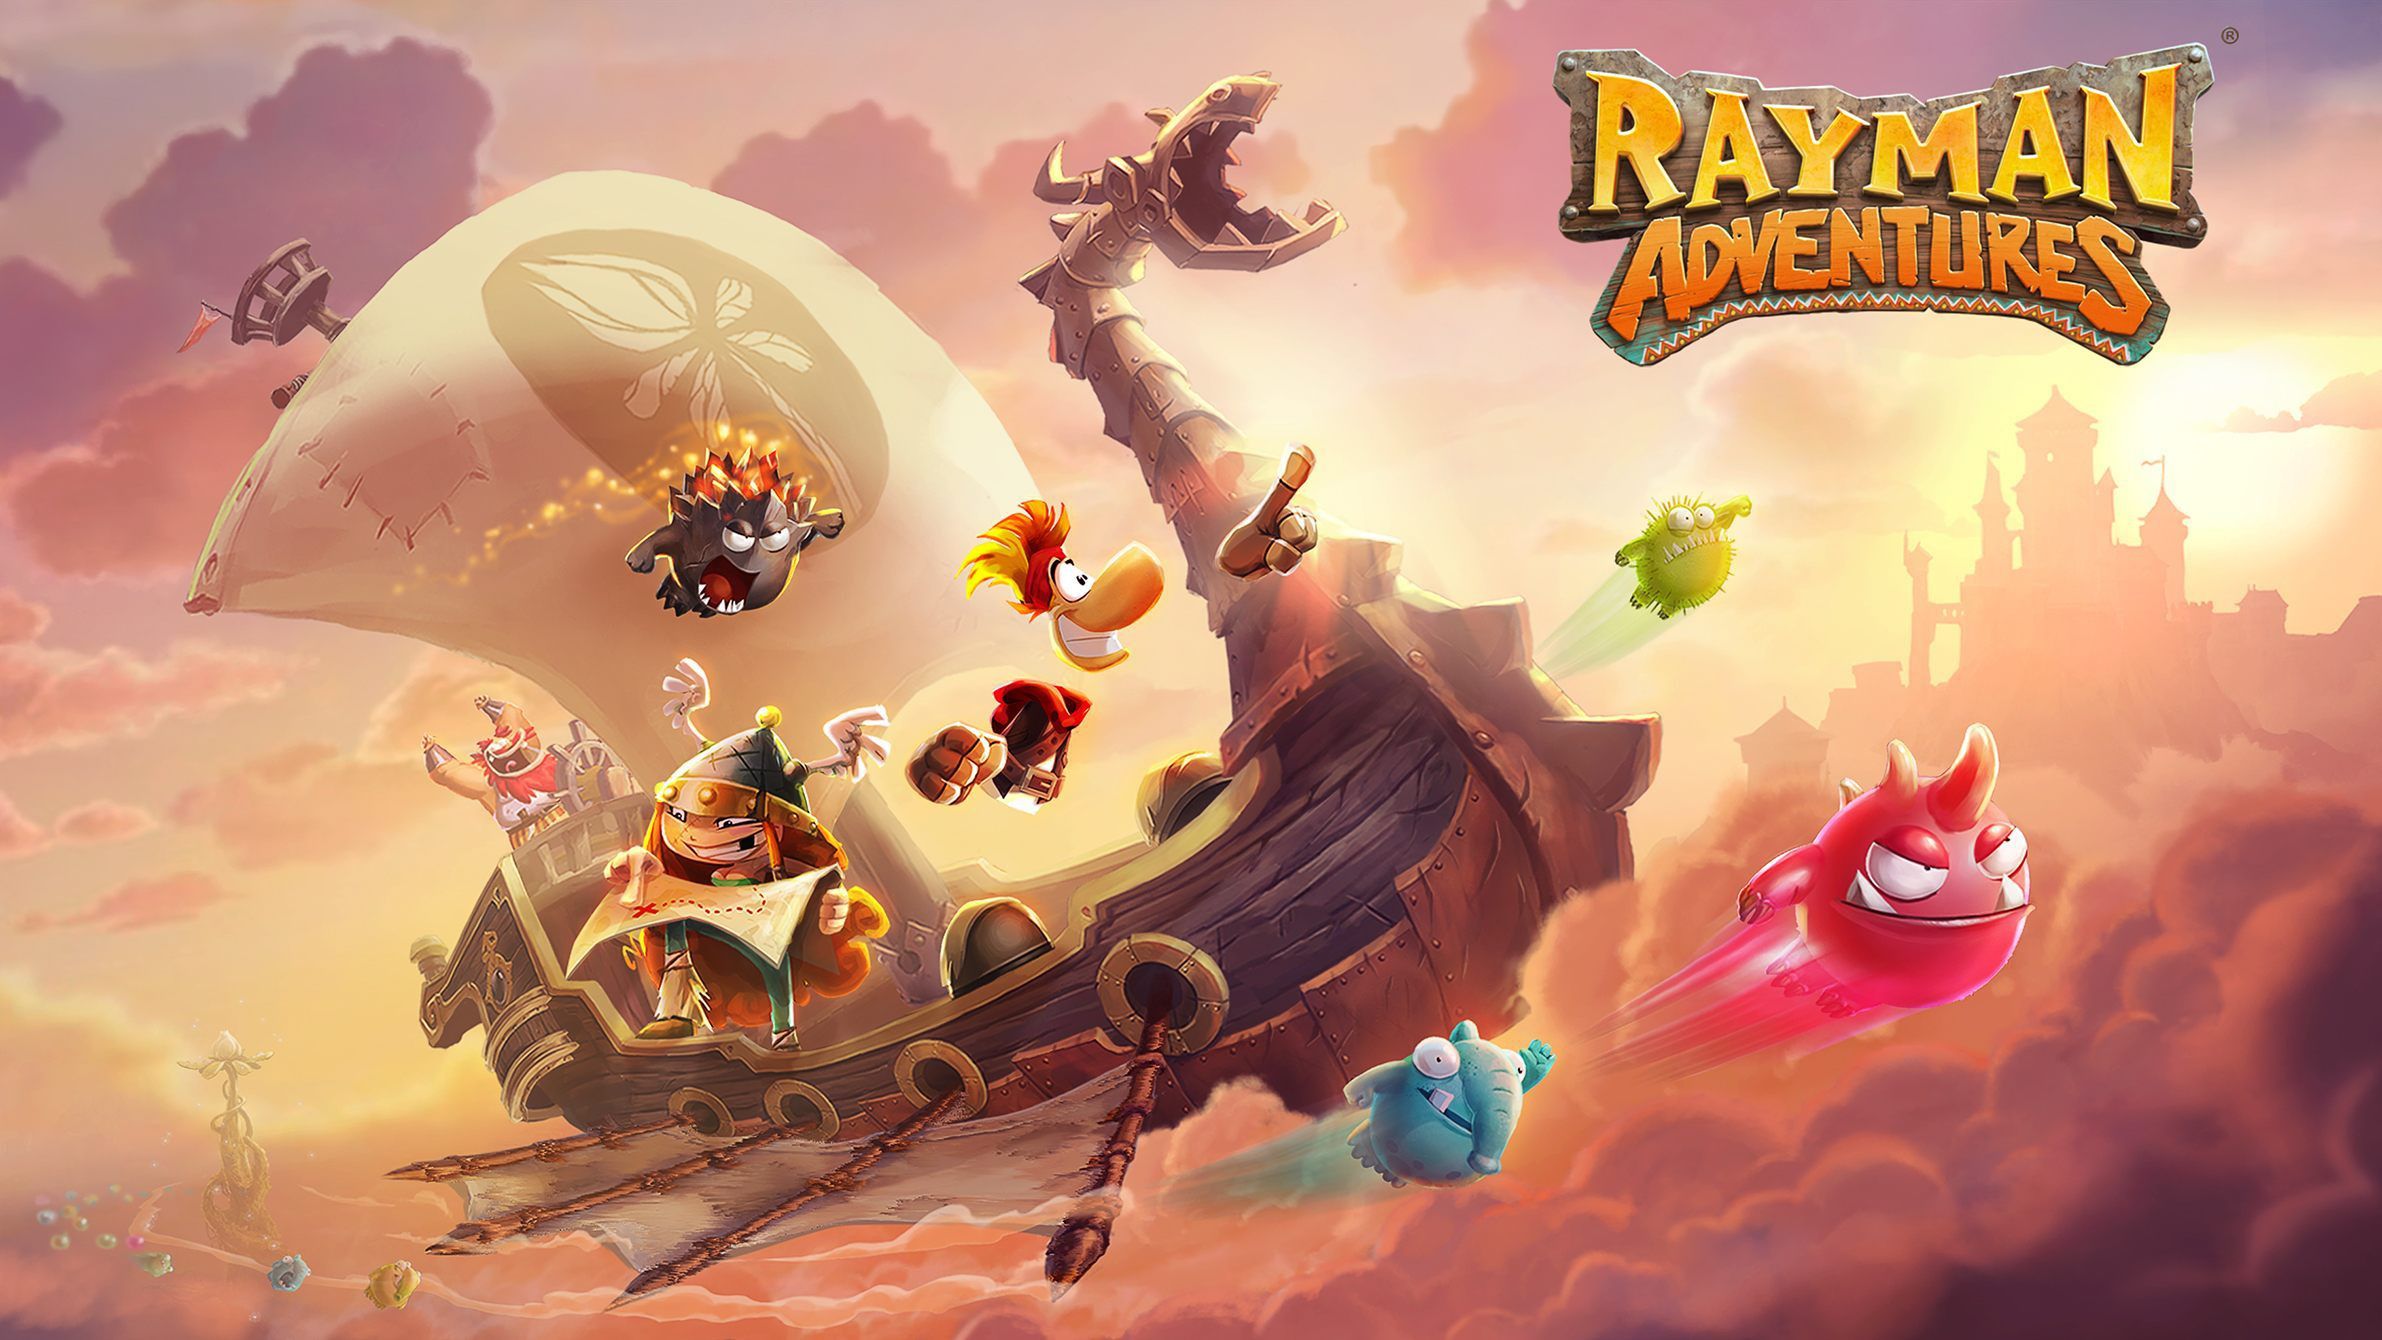 Rayman Adventures arrivera sur iOS début Décembre